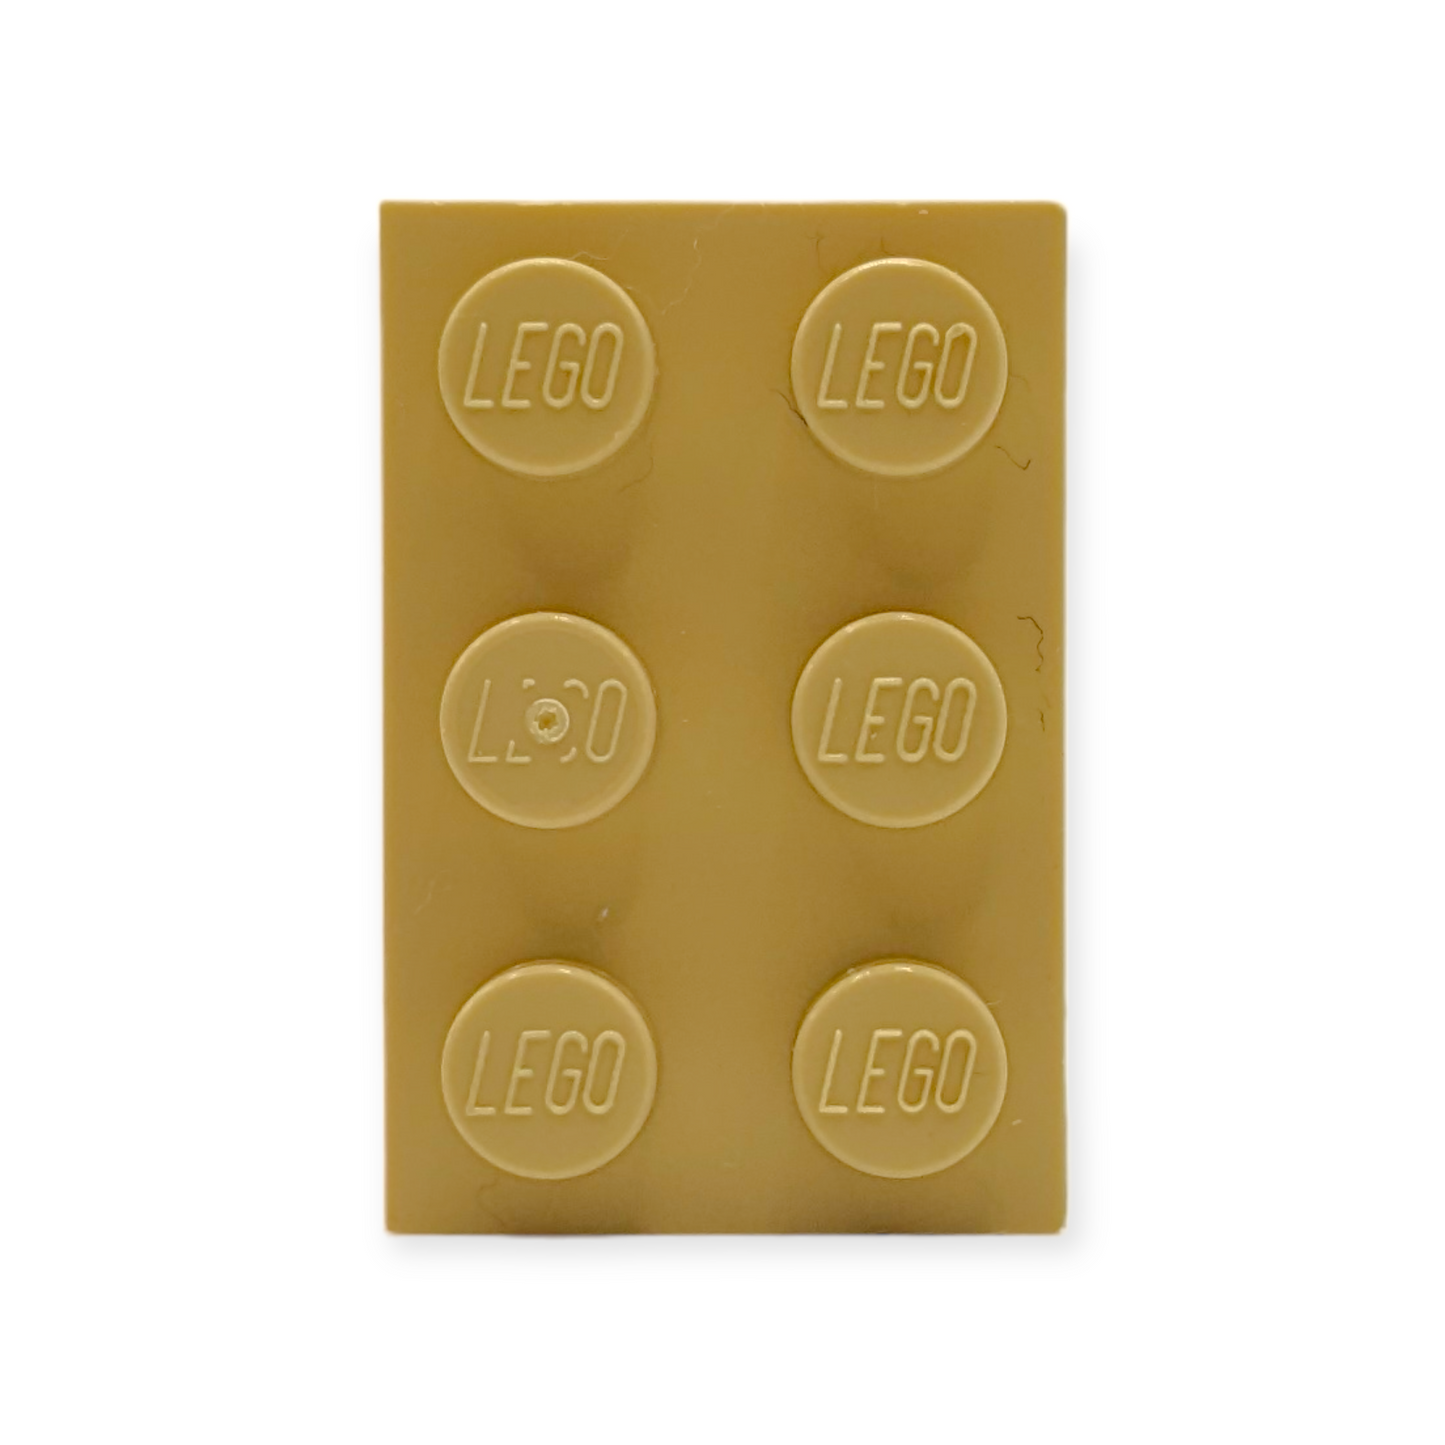 LEGO Plate  - 2x3 in Tan